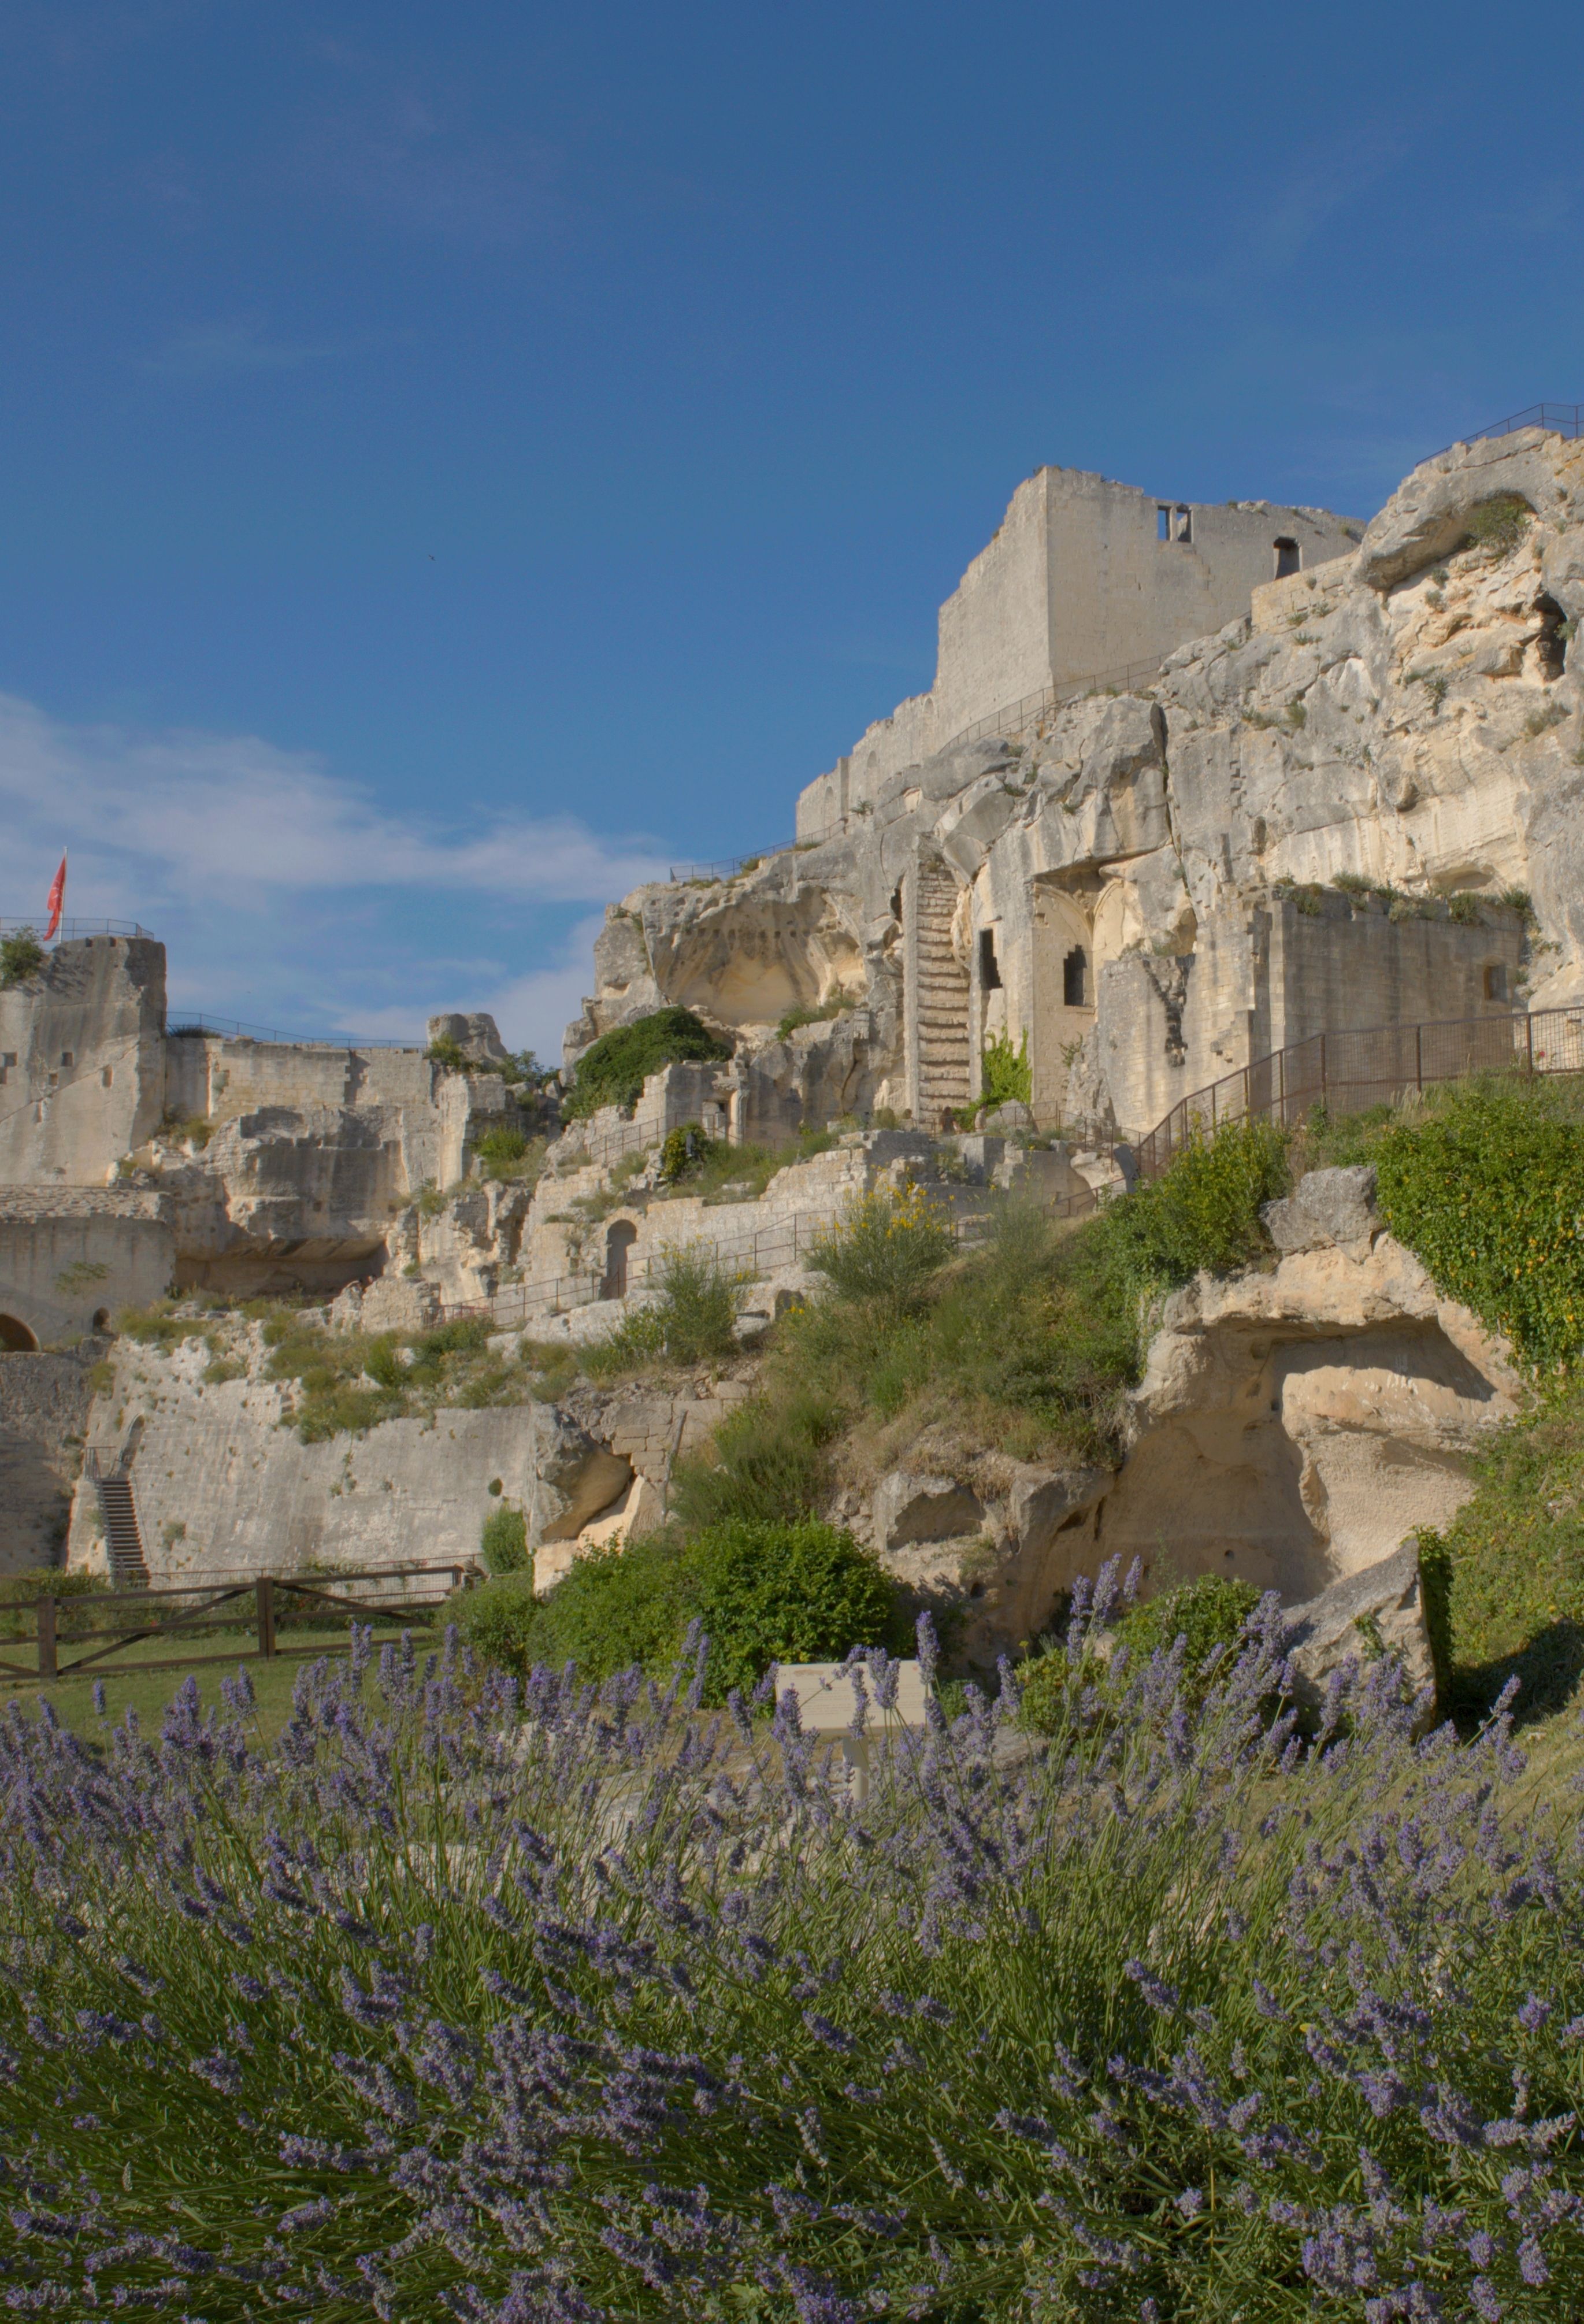 Baux Castle, Les Baux-de-Provence, Bouches-du-Rhône, France